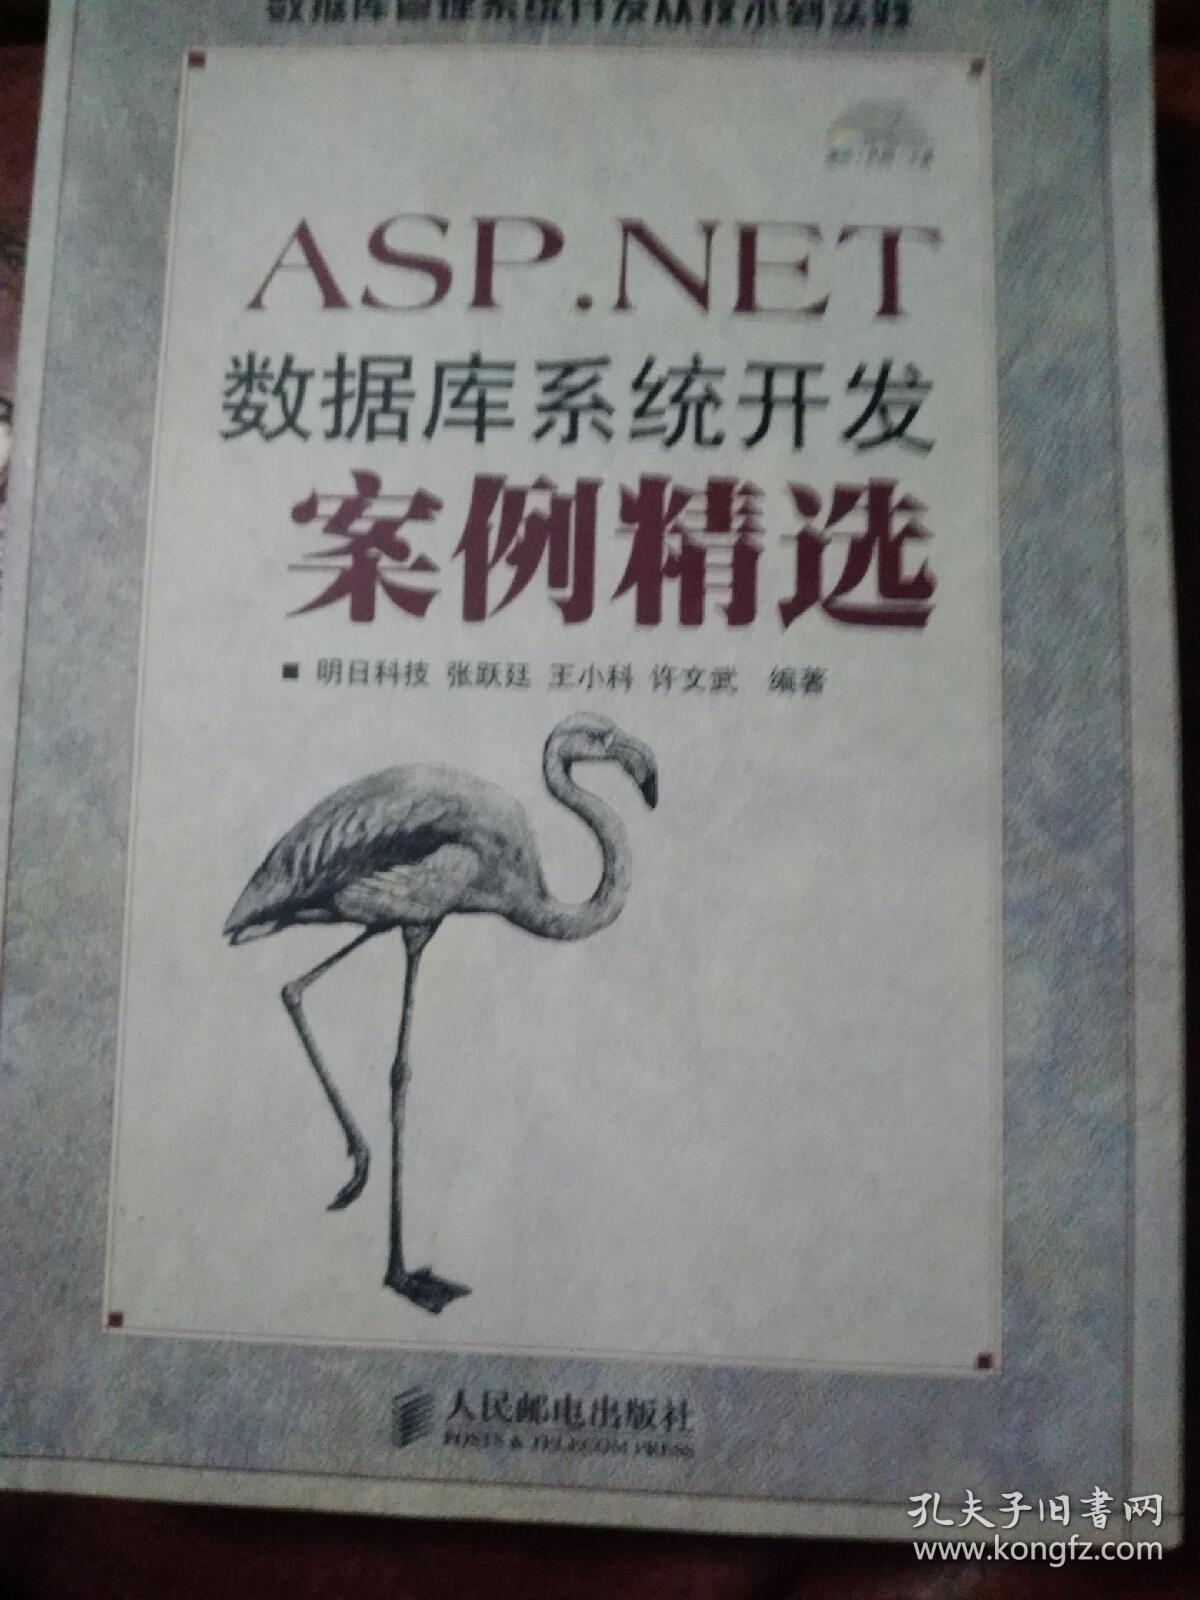 ASP.NET数据库系统开发案例精选（附光盘）